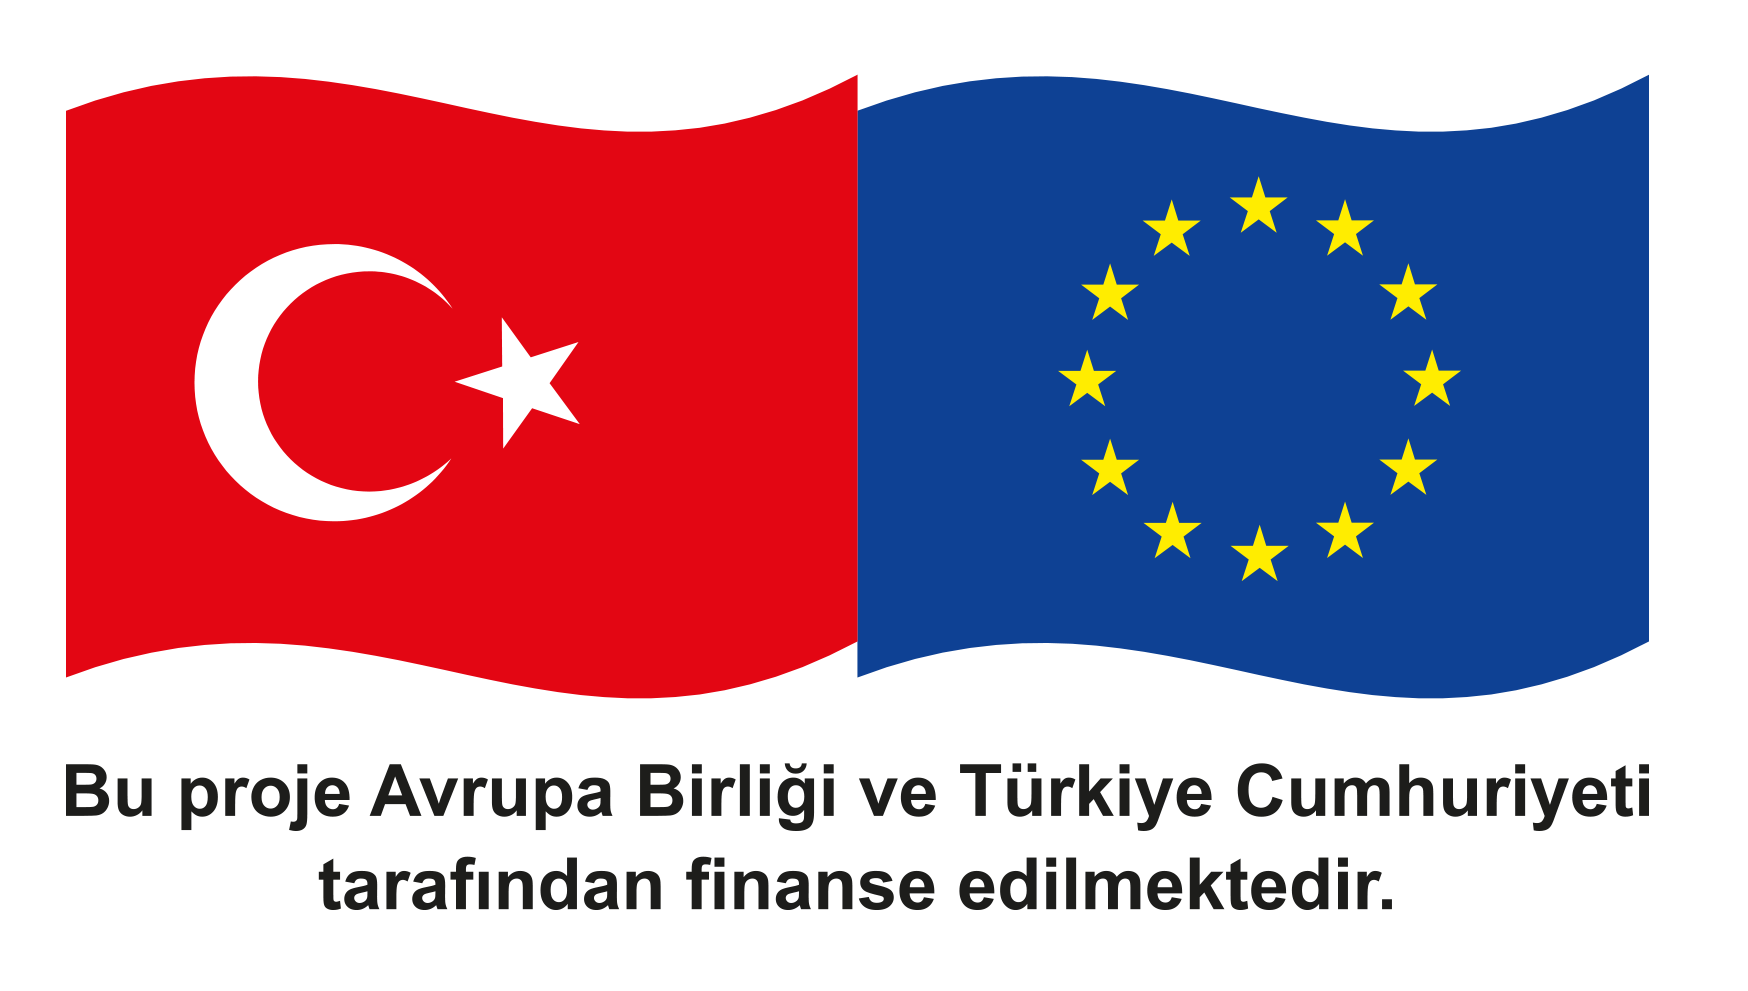 Avrupa Birliği Logosu Bu Proje Avrupa Birliği ve Türkiye Cumhuriyeti tarafından finanse edilmektedir.